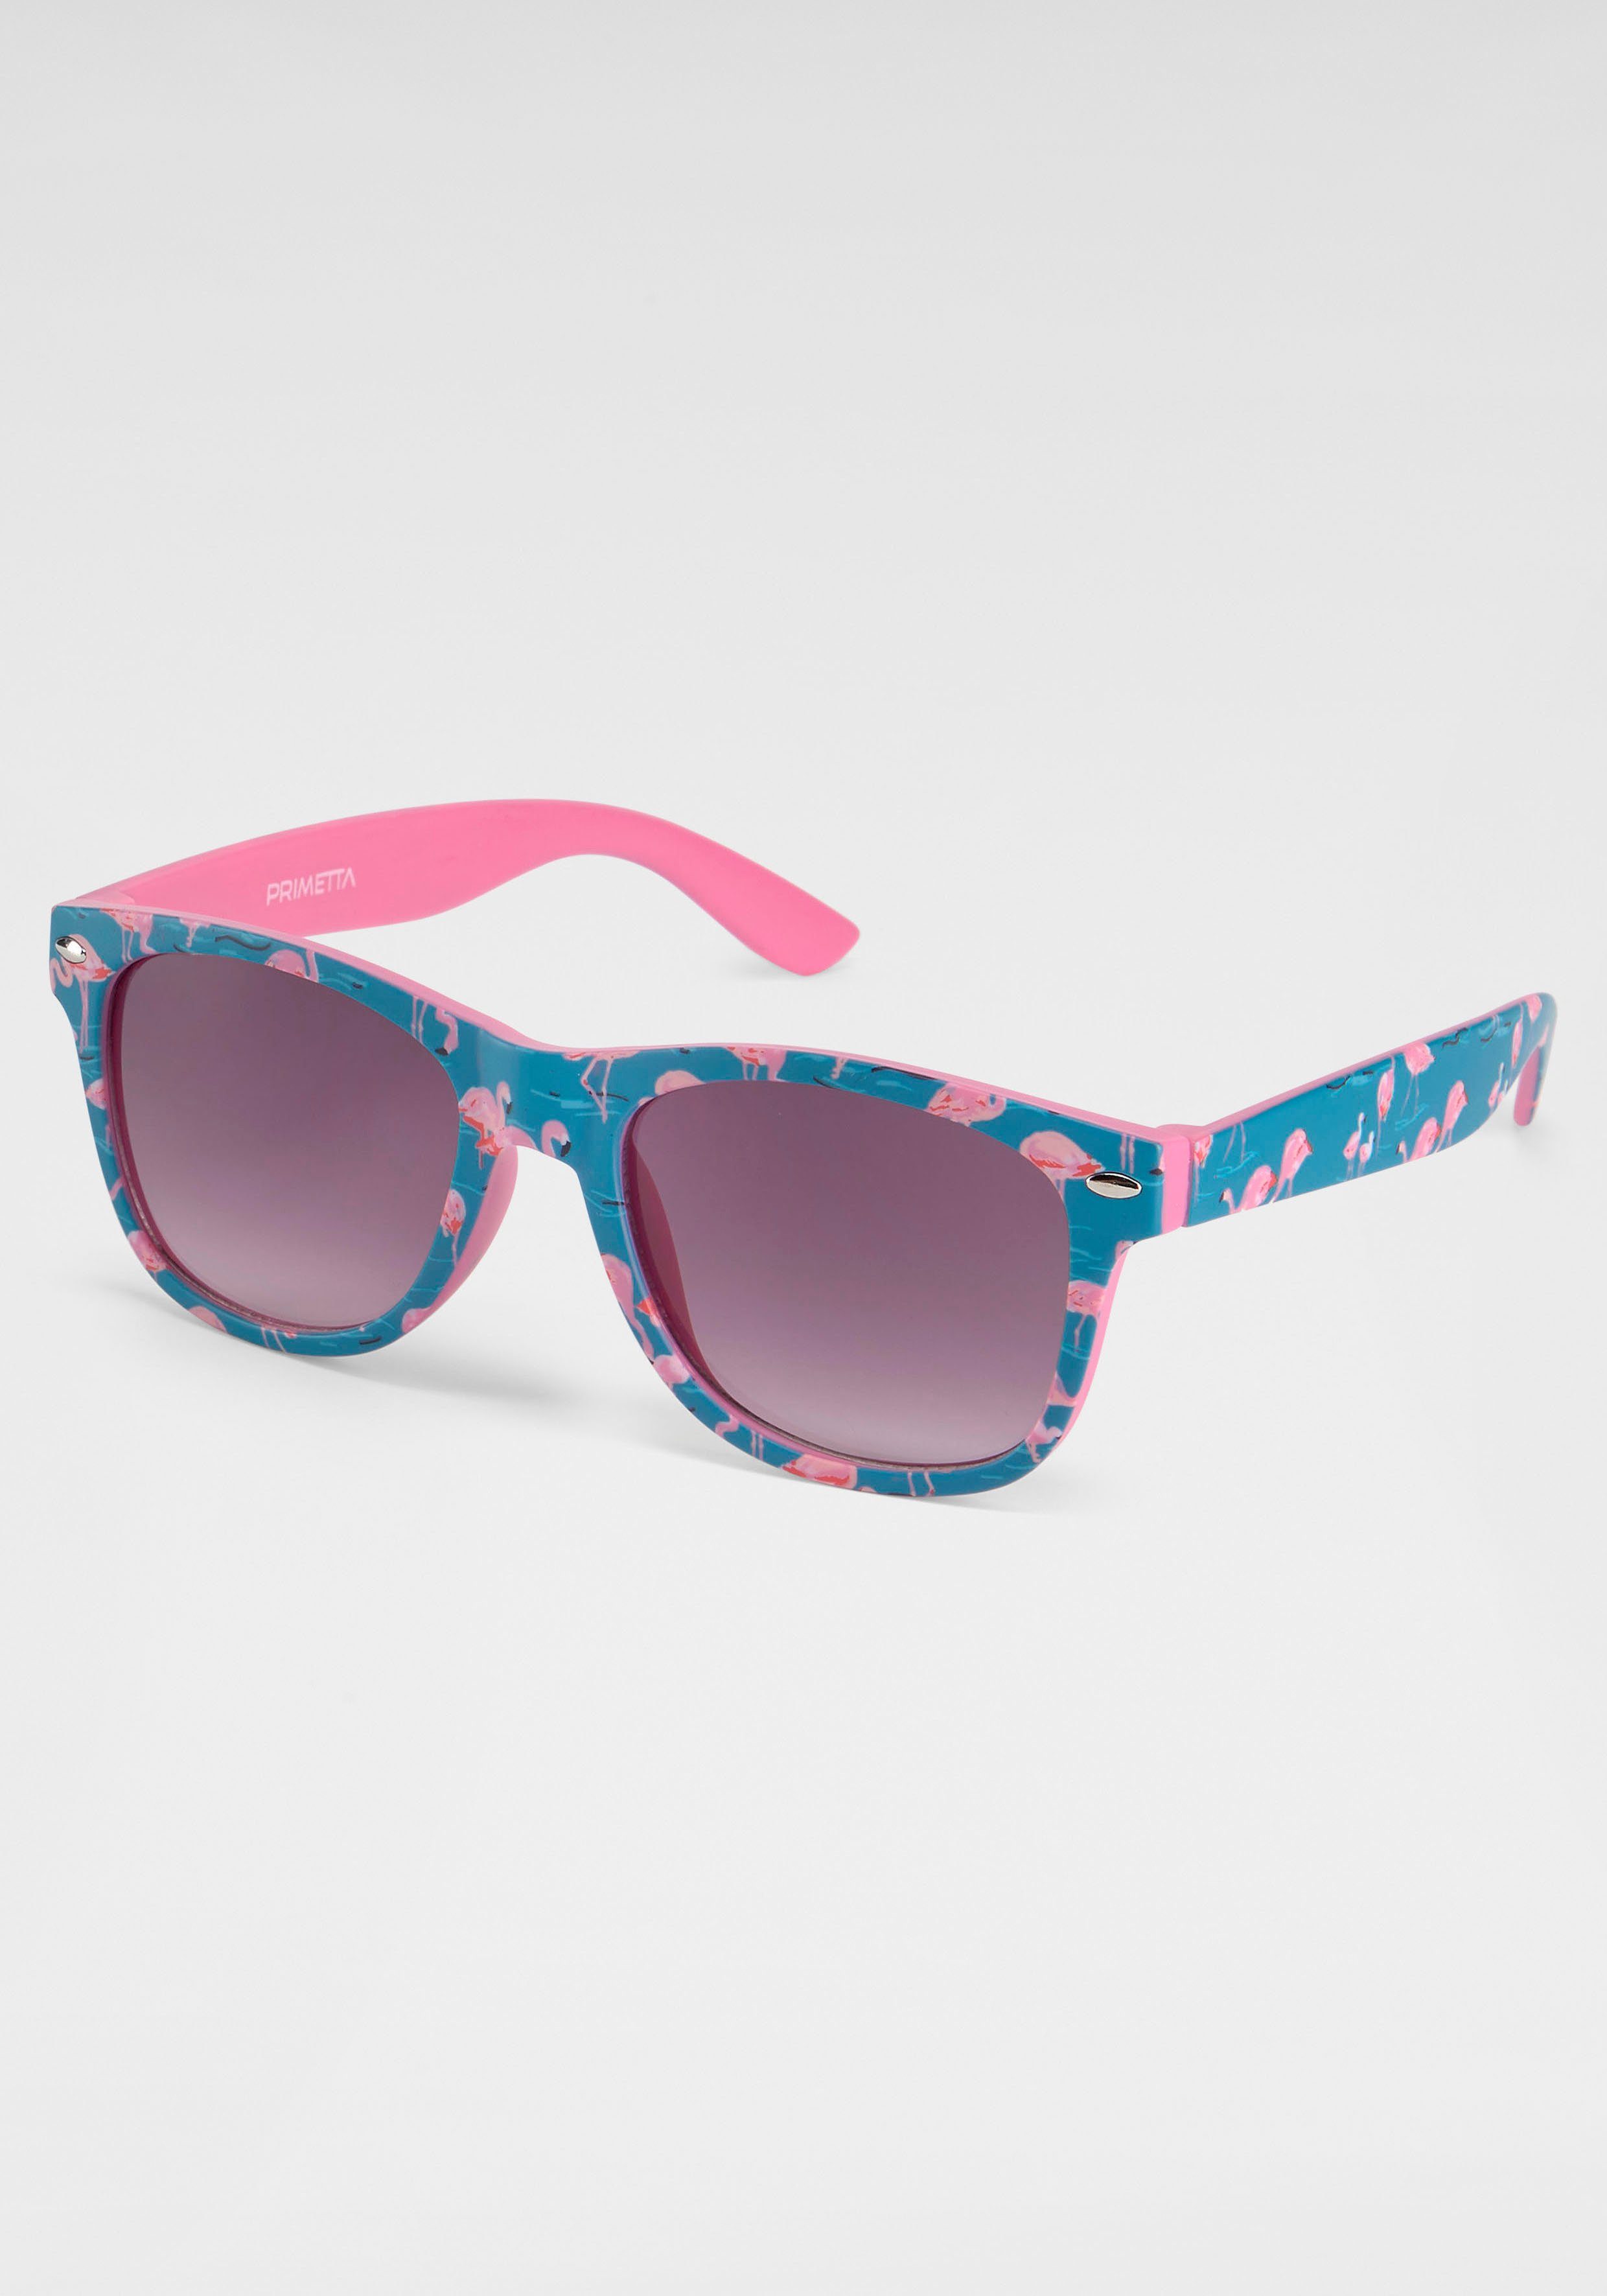 Bedruckte Sonnenbrillen online kaufen | OTTO